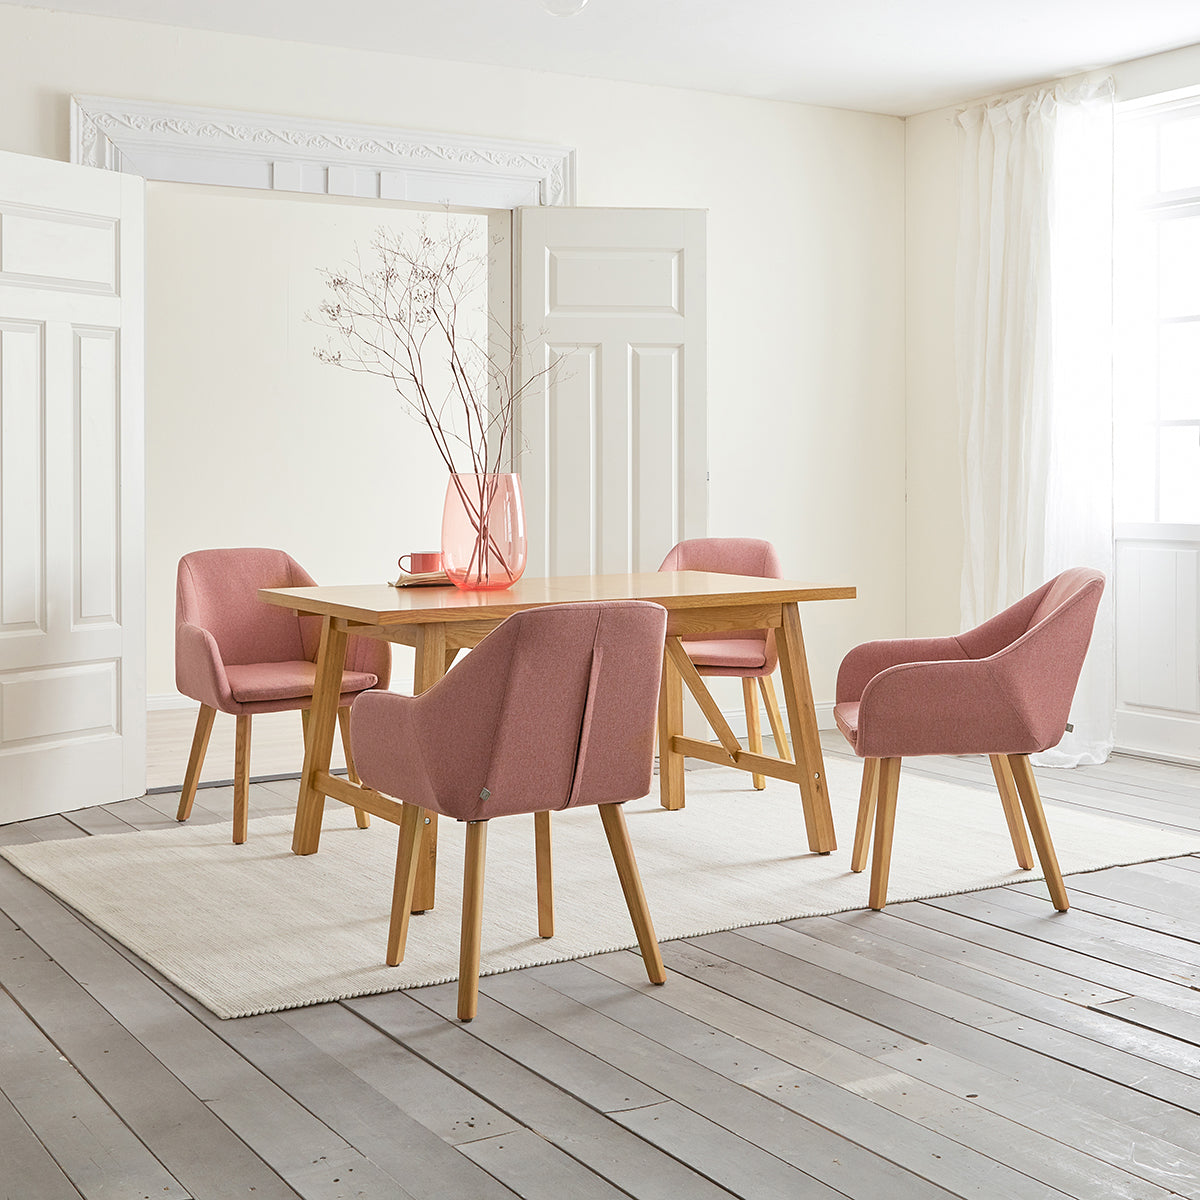 Essgruppe Lavender - Rosé, 5-tlg. mit 1x Esstisch, 4x Esszimmerstuhl aus Eiche in Naturfarben, lackiert / Rosé